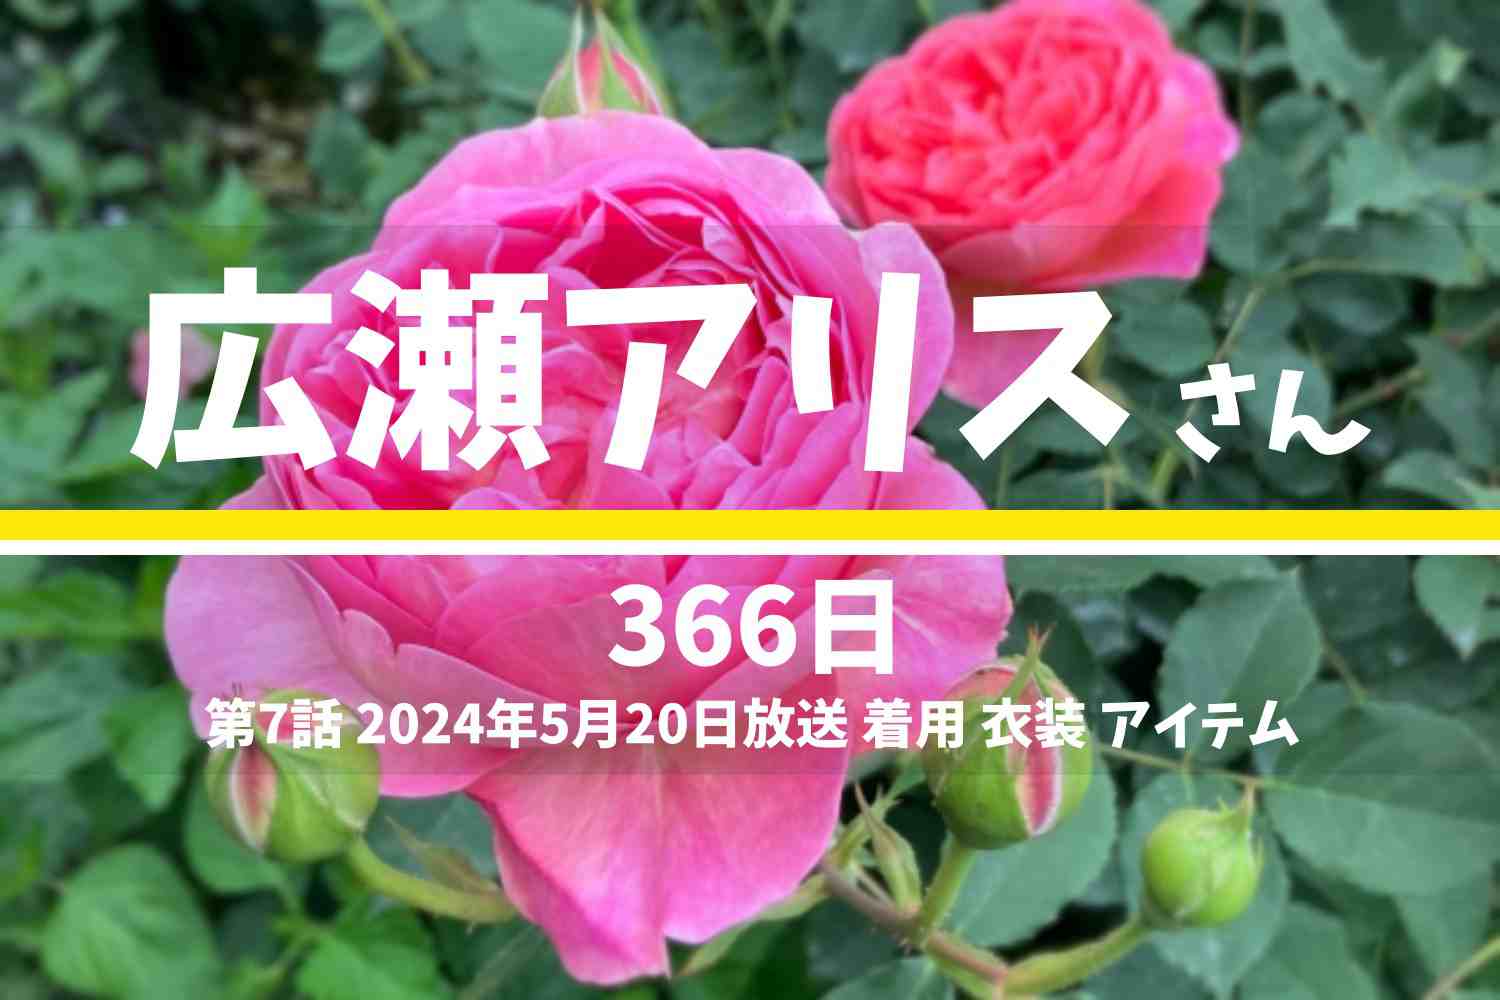 366日 広瀬アリスさん テレビドラマ 衣装 2024年5月20日放送